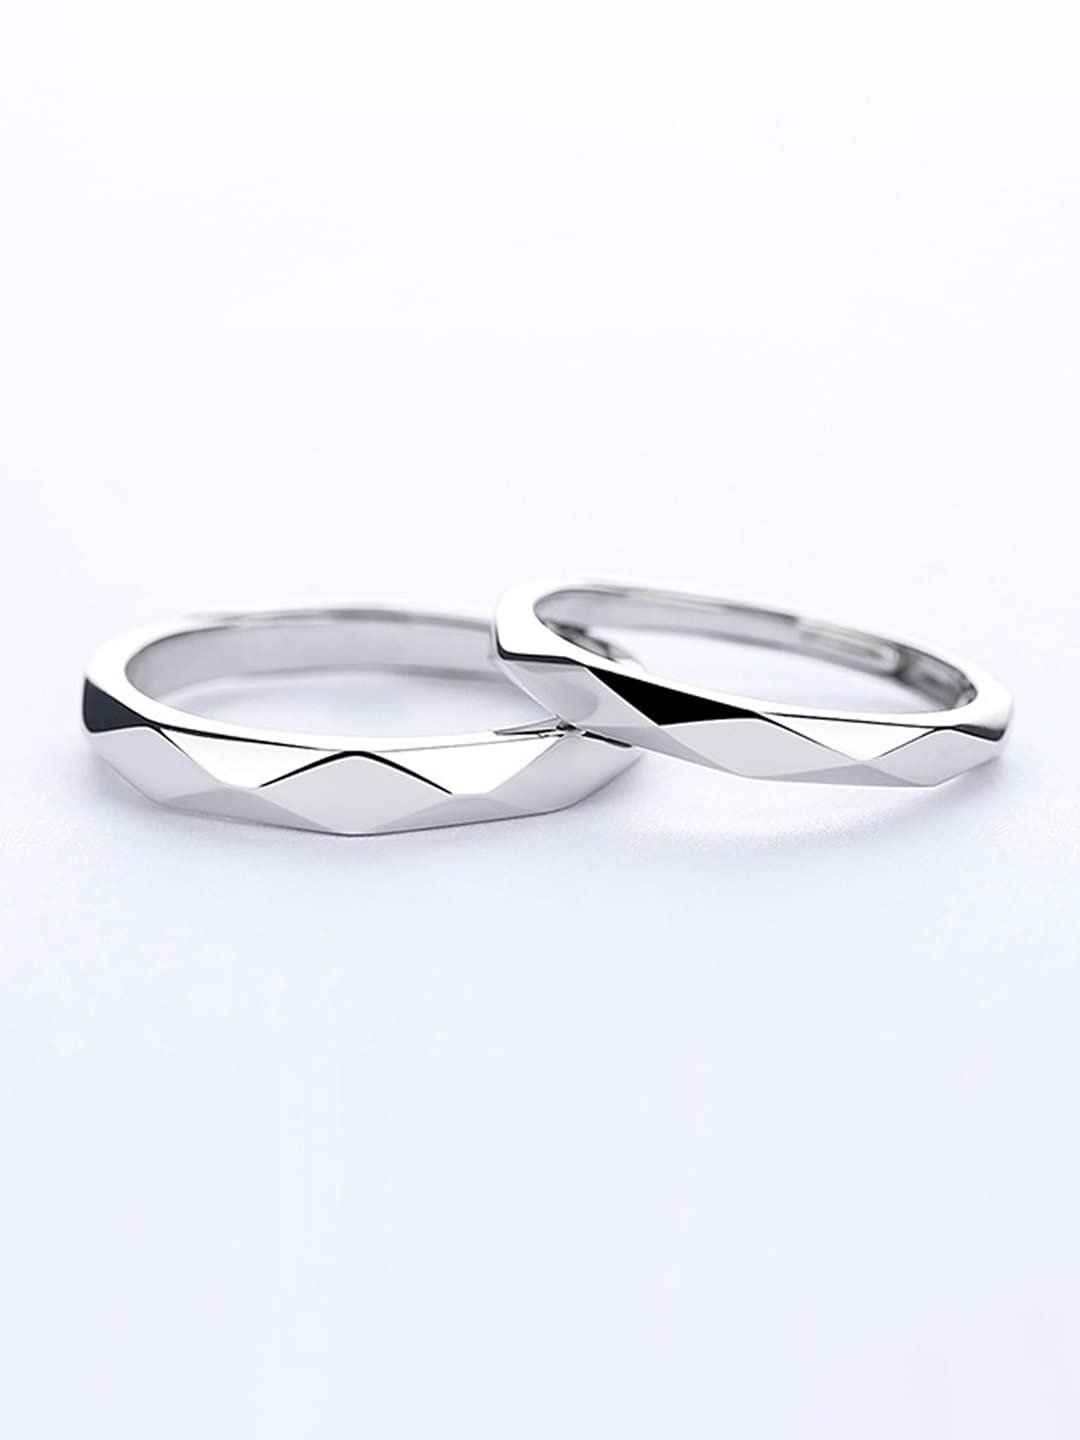 Black Onyx Ring, 925 Sterling Silver Ring, Love Signet Men's Ring, Handmade  Ring, Boys Ring, Elegant Outstanding Men's Ring, Gemstone Ring - Etsy